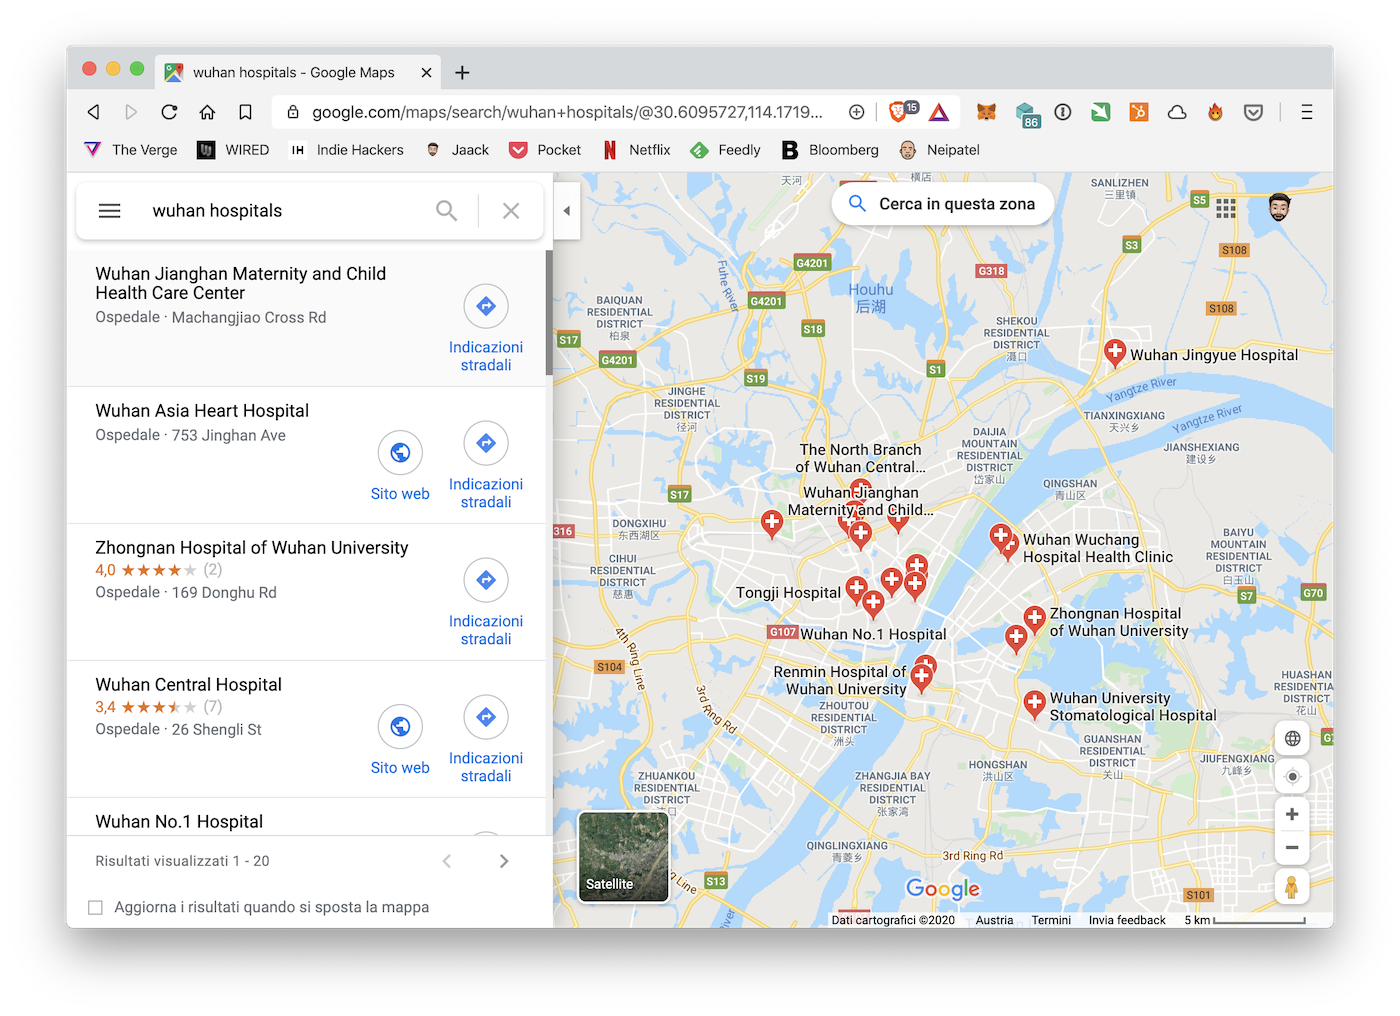 La mappa dei 20 ospedali di Wuhan, da Google Maps